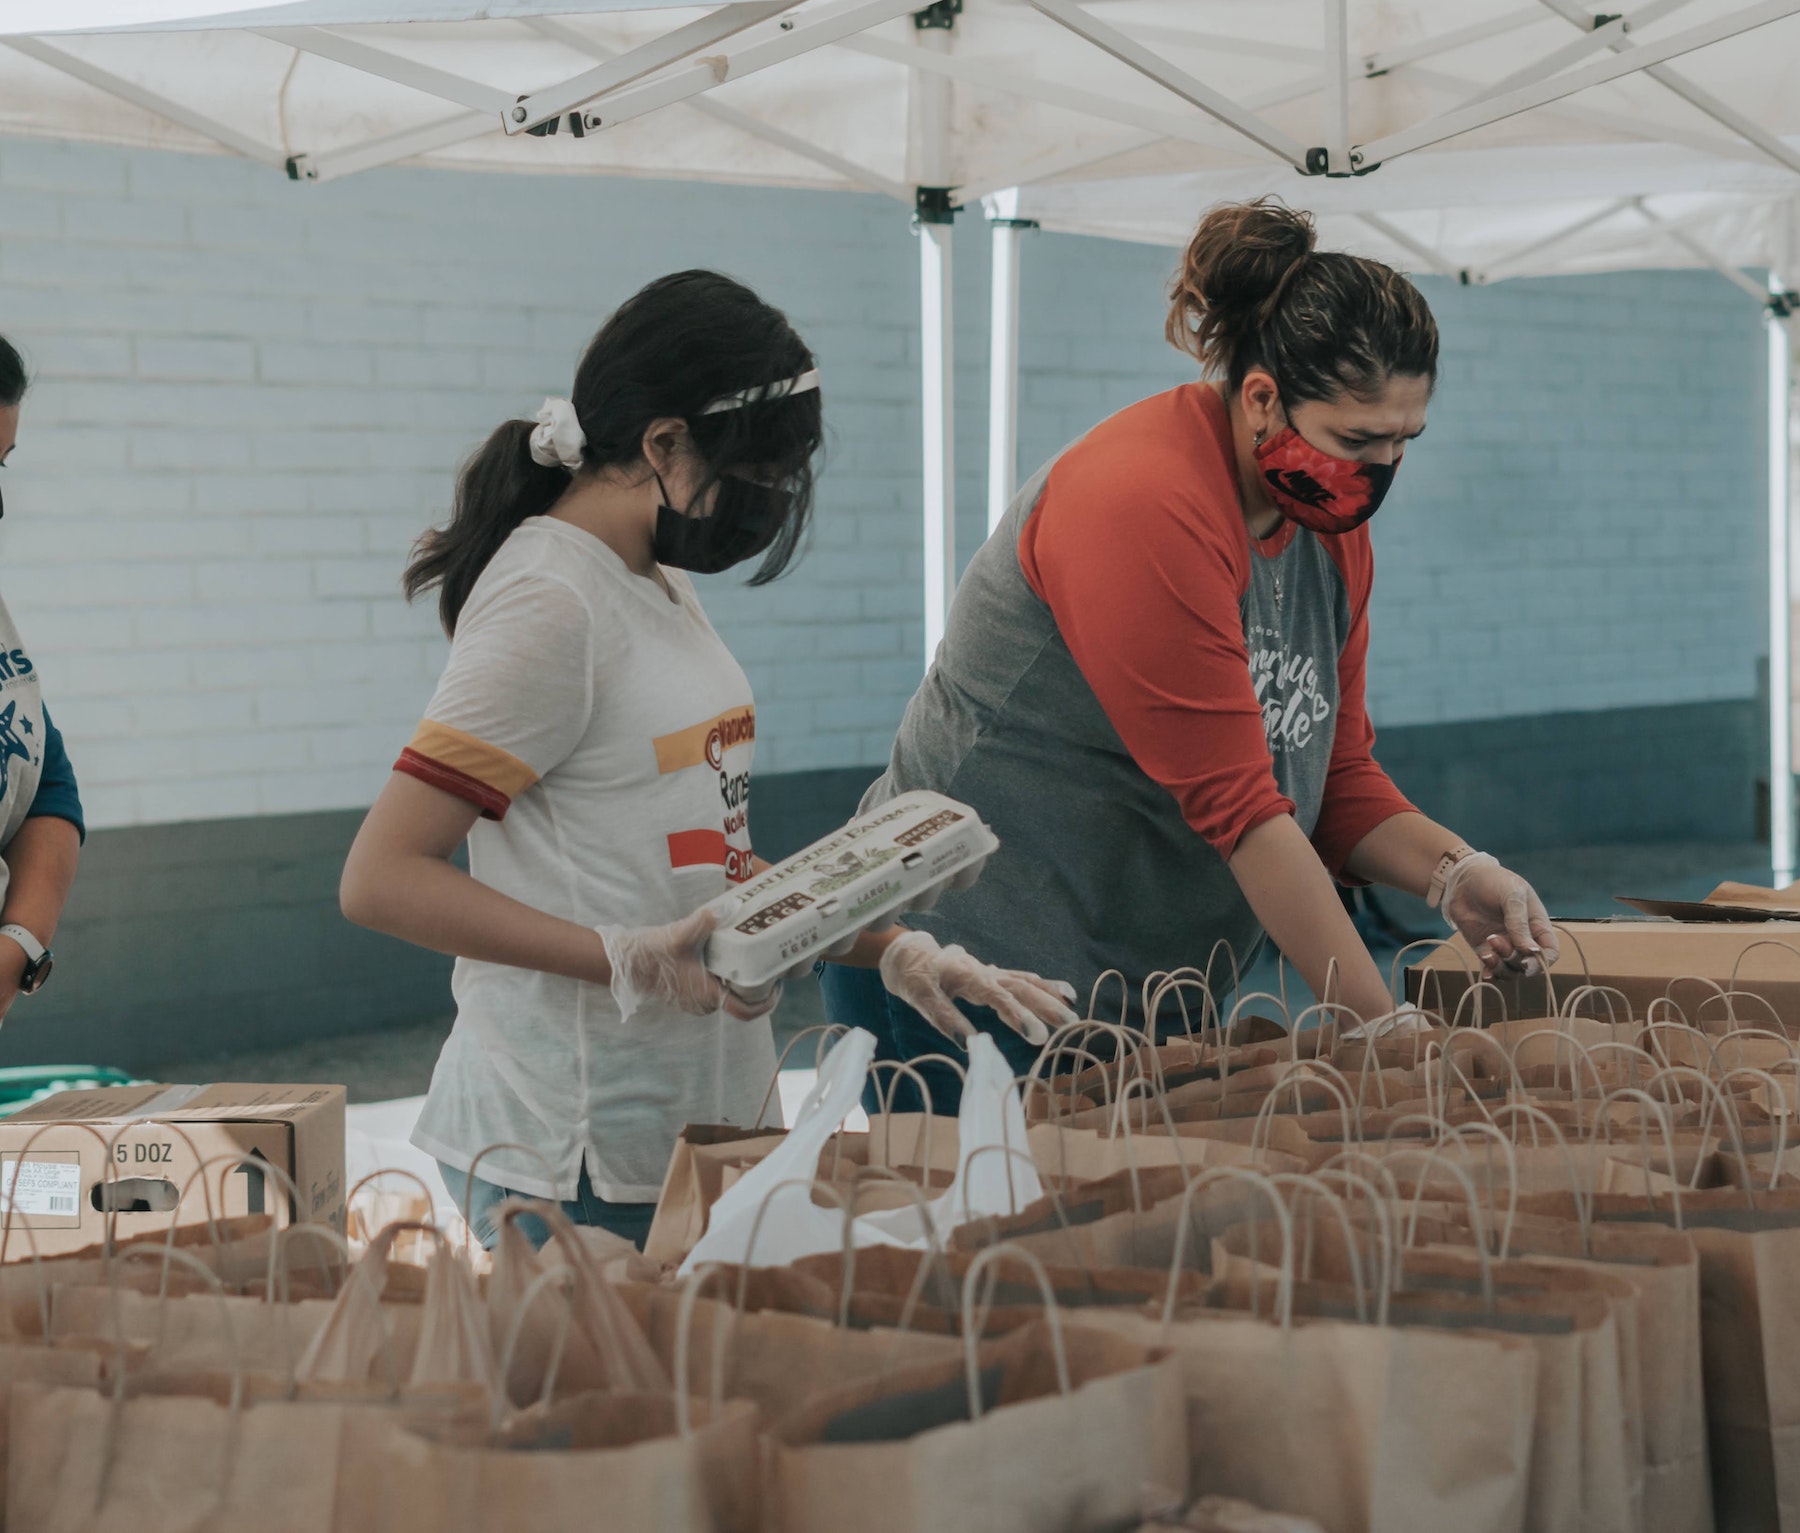 two volunteers preparing food parcels outdoors